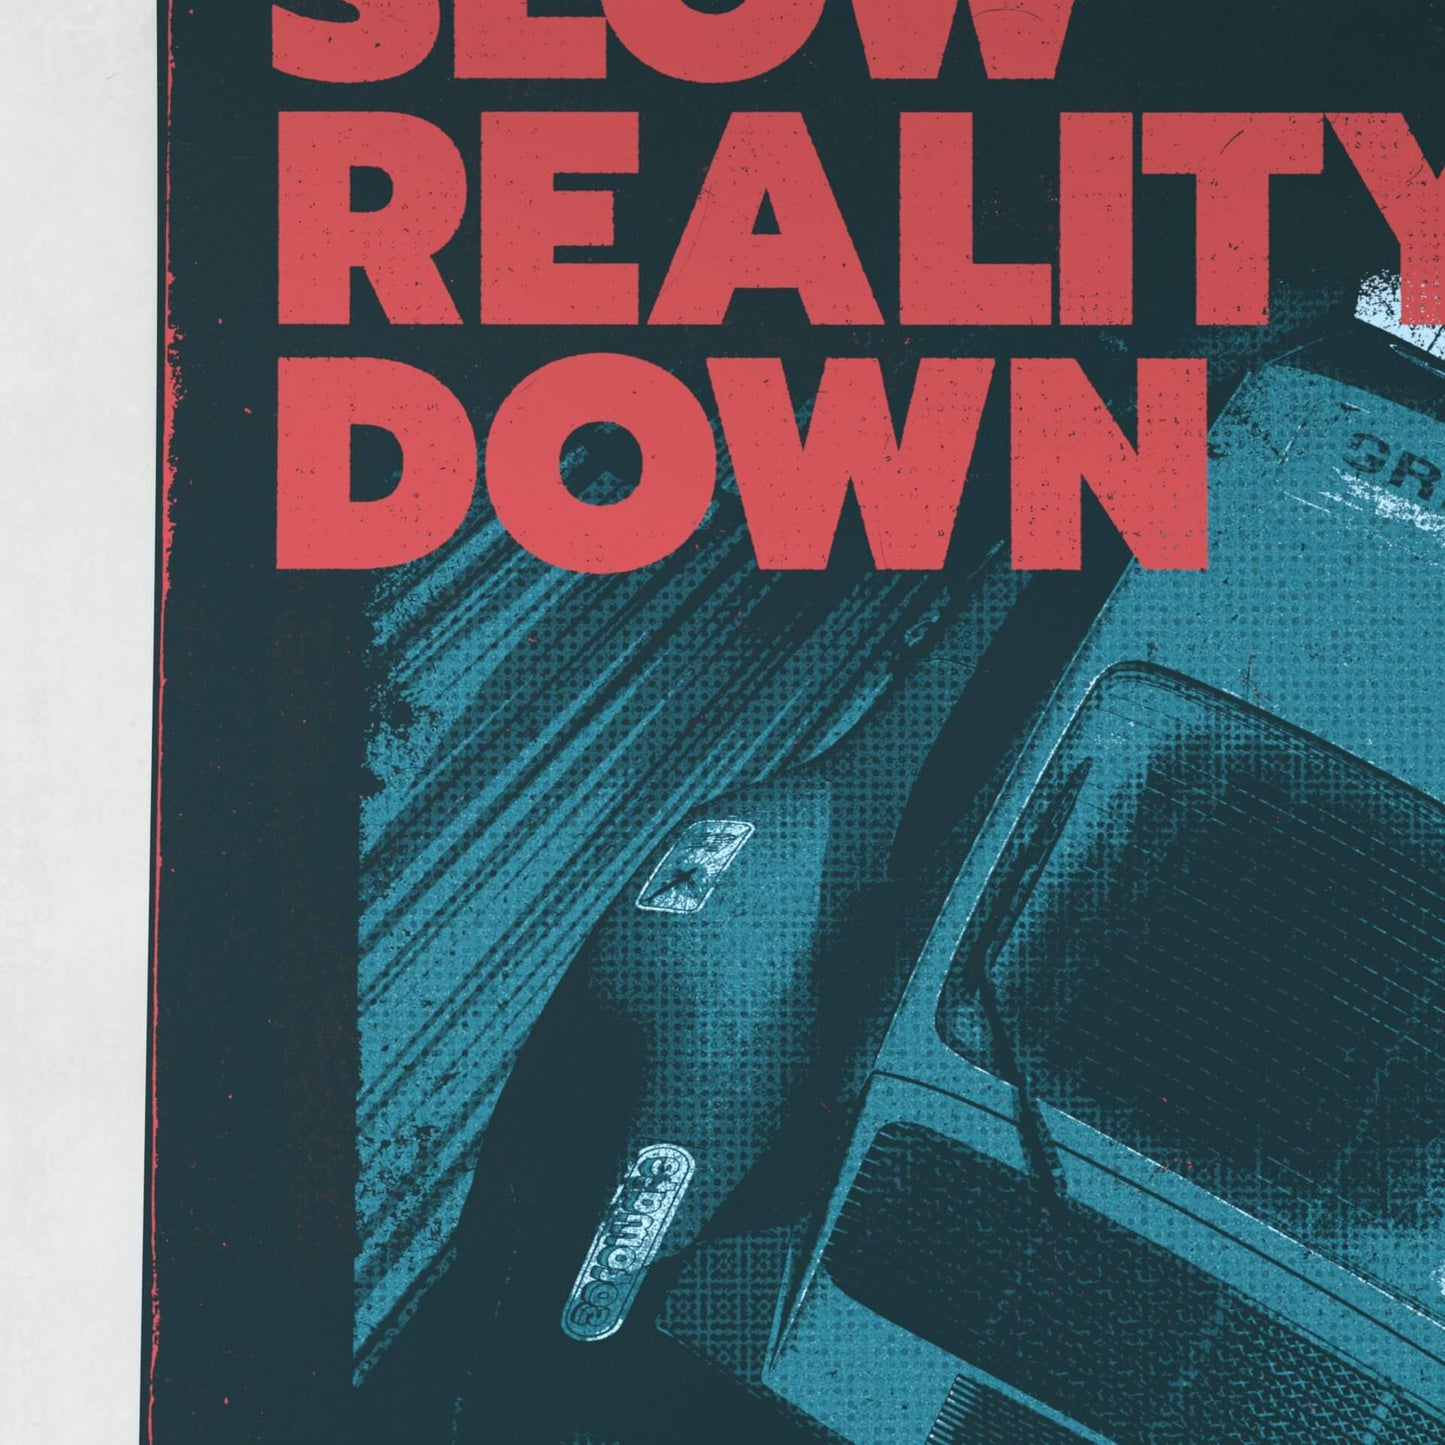 Slow Reality Down - Matte Poster